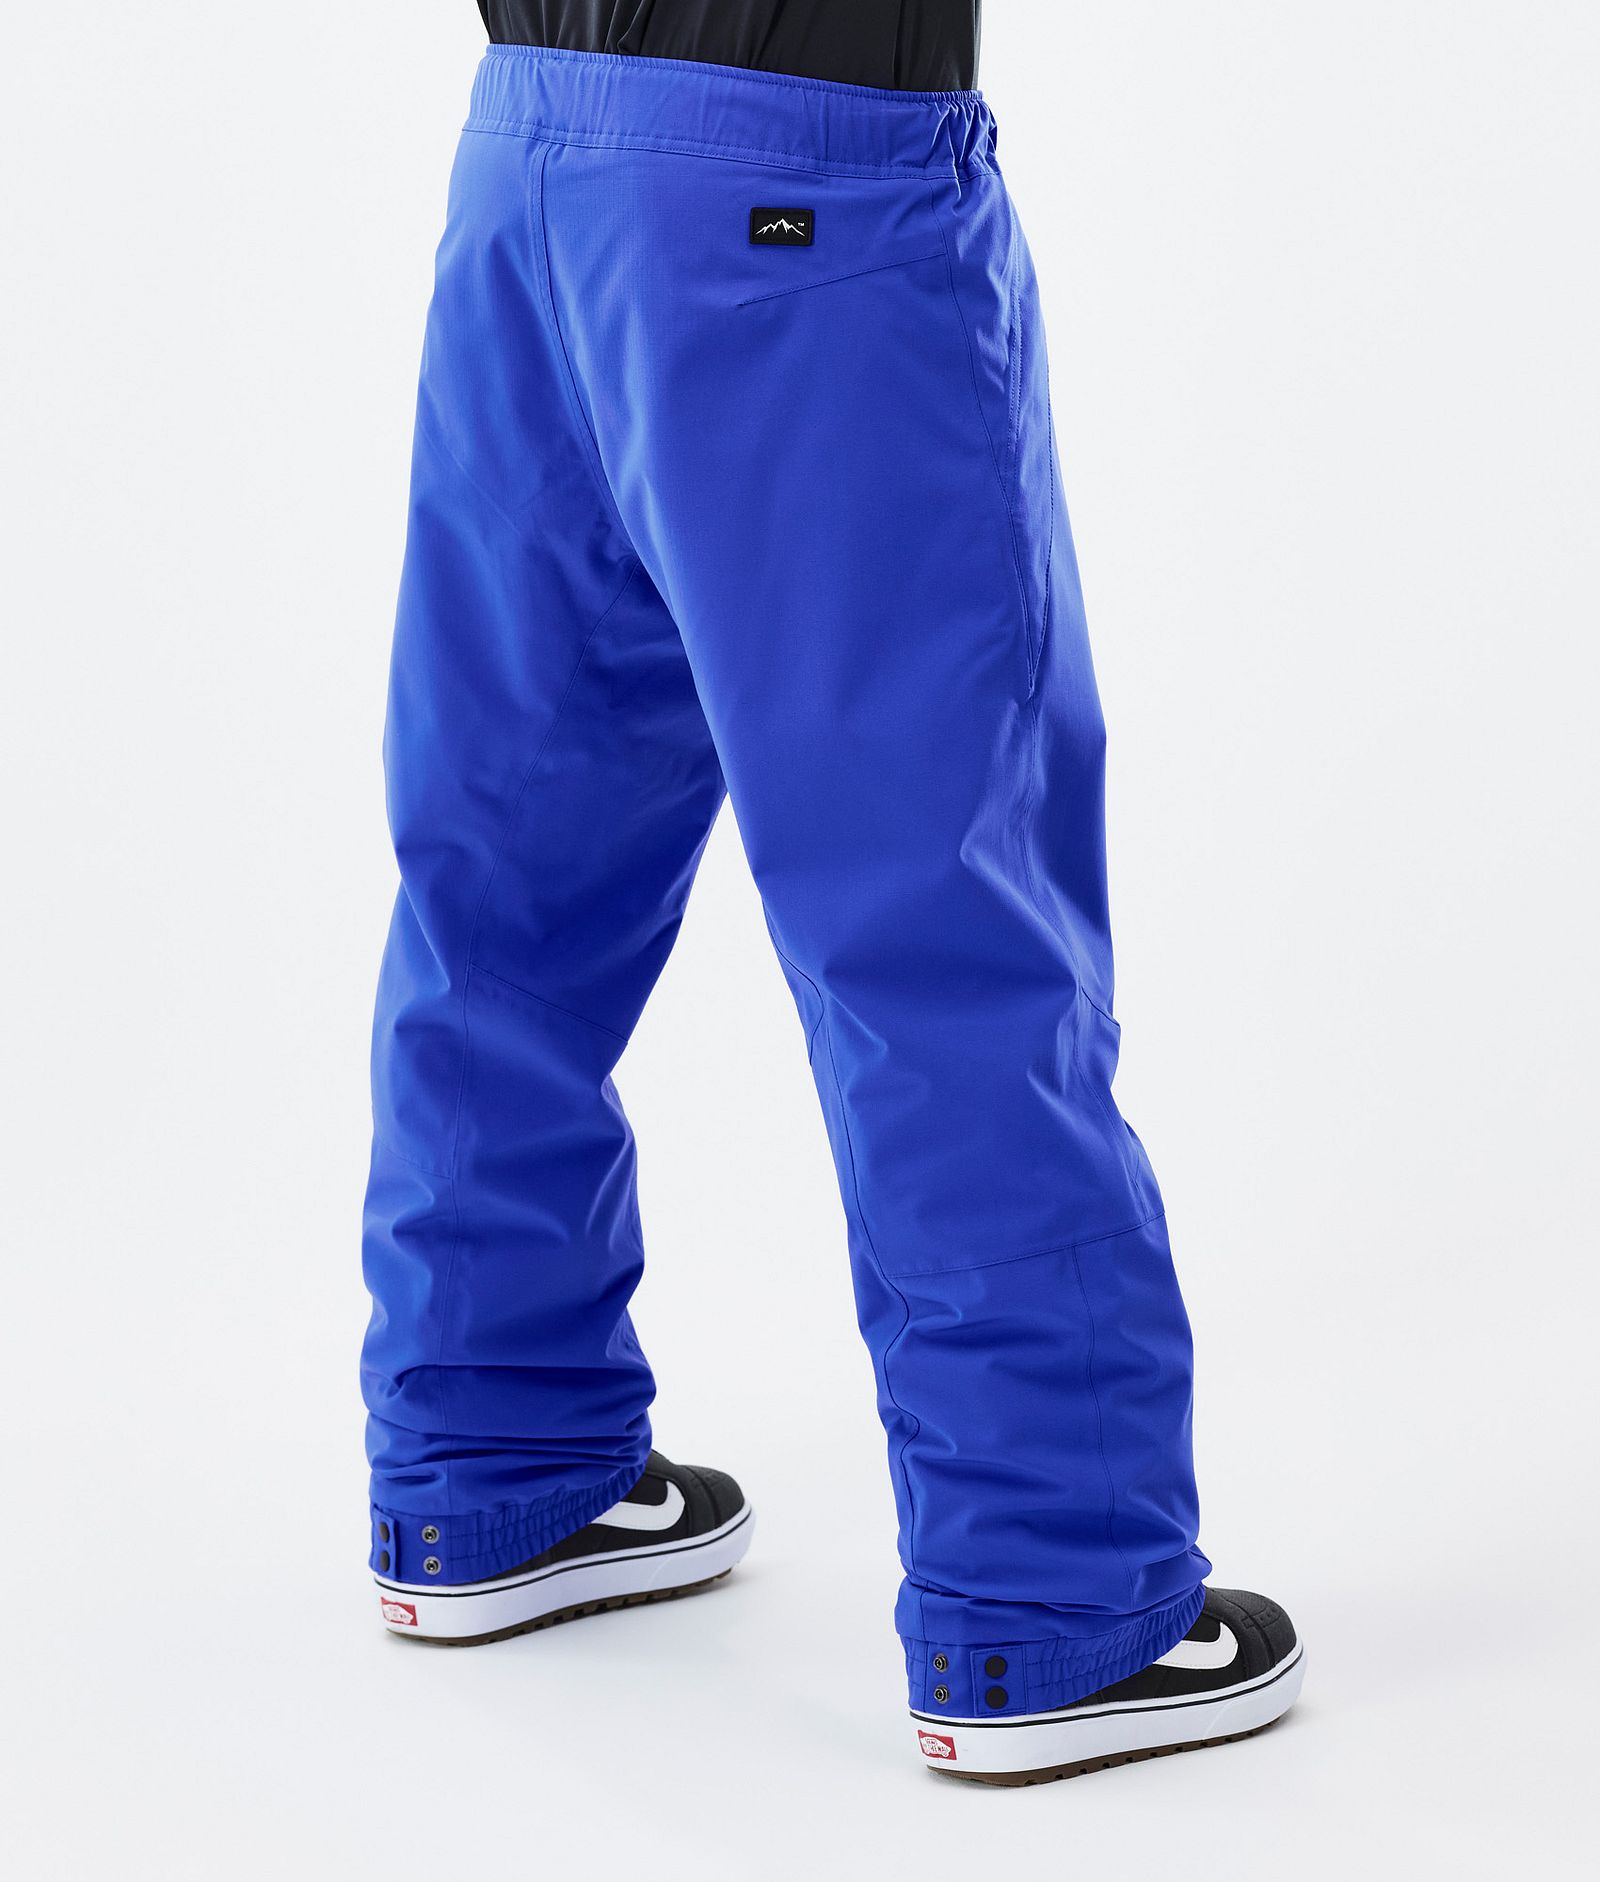 Blizzard Pantalon de Snowboard Homme Cobalt Blue